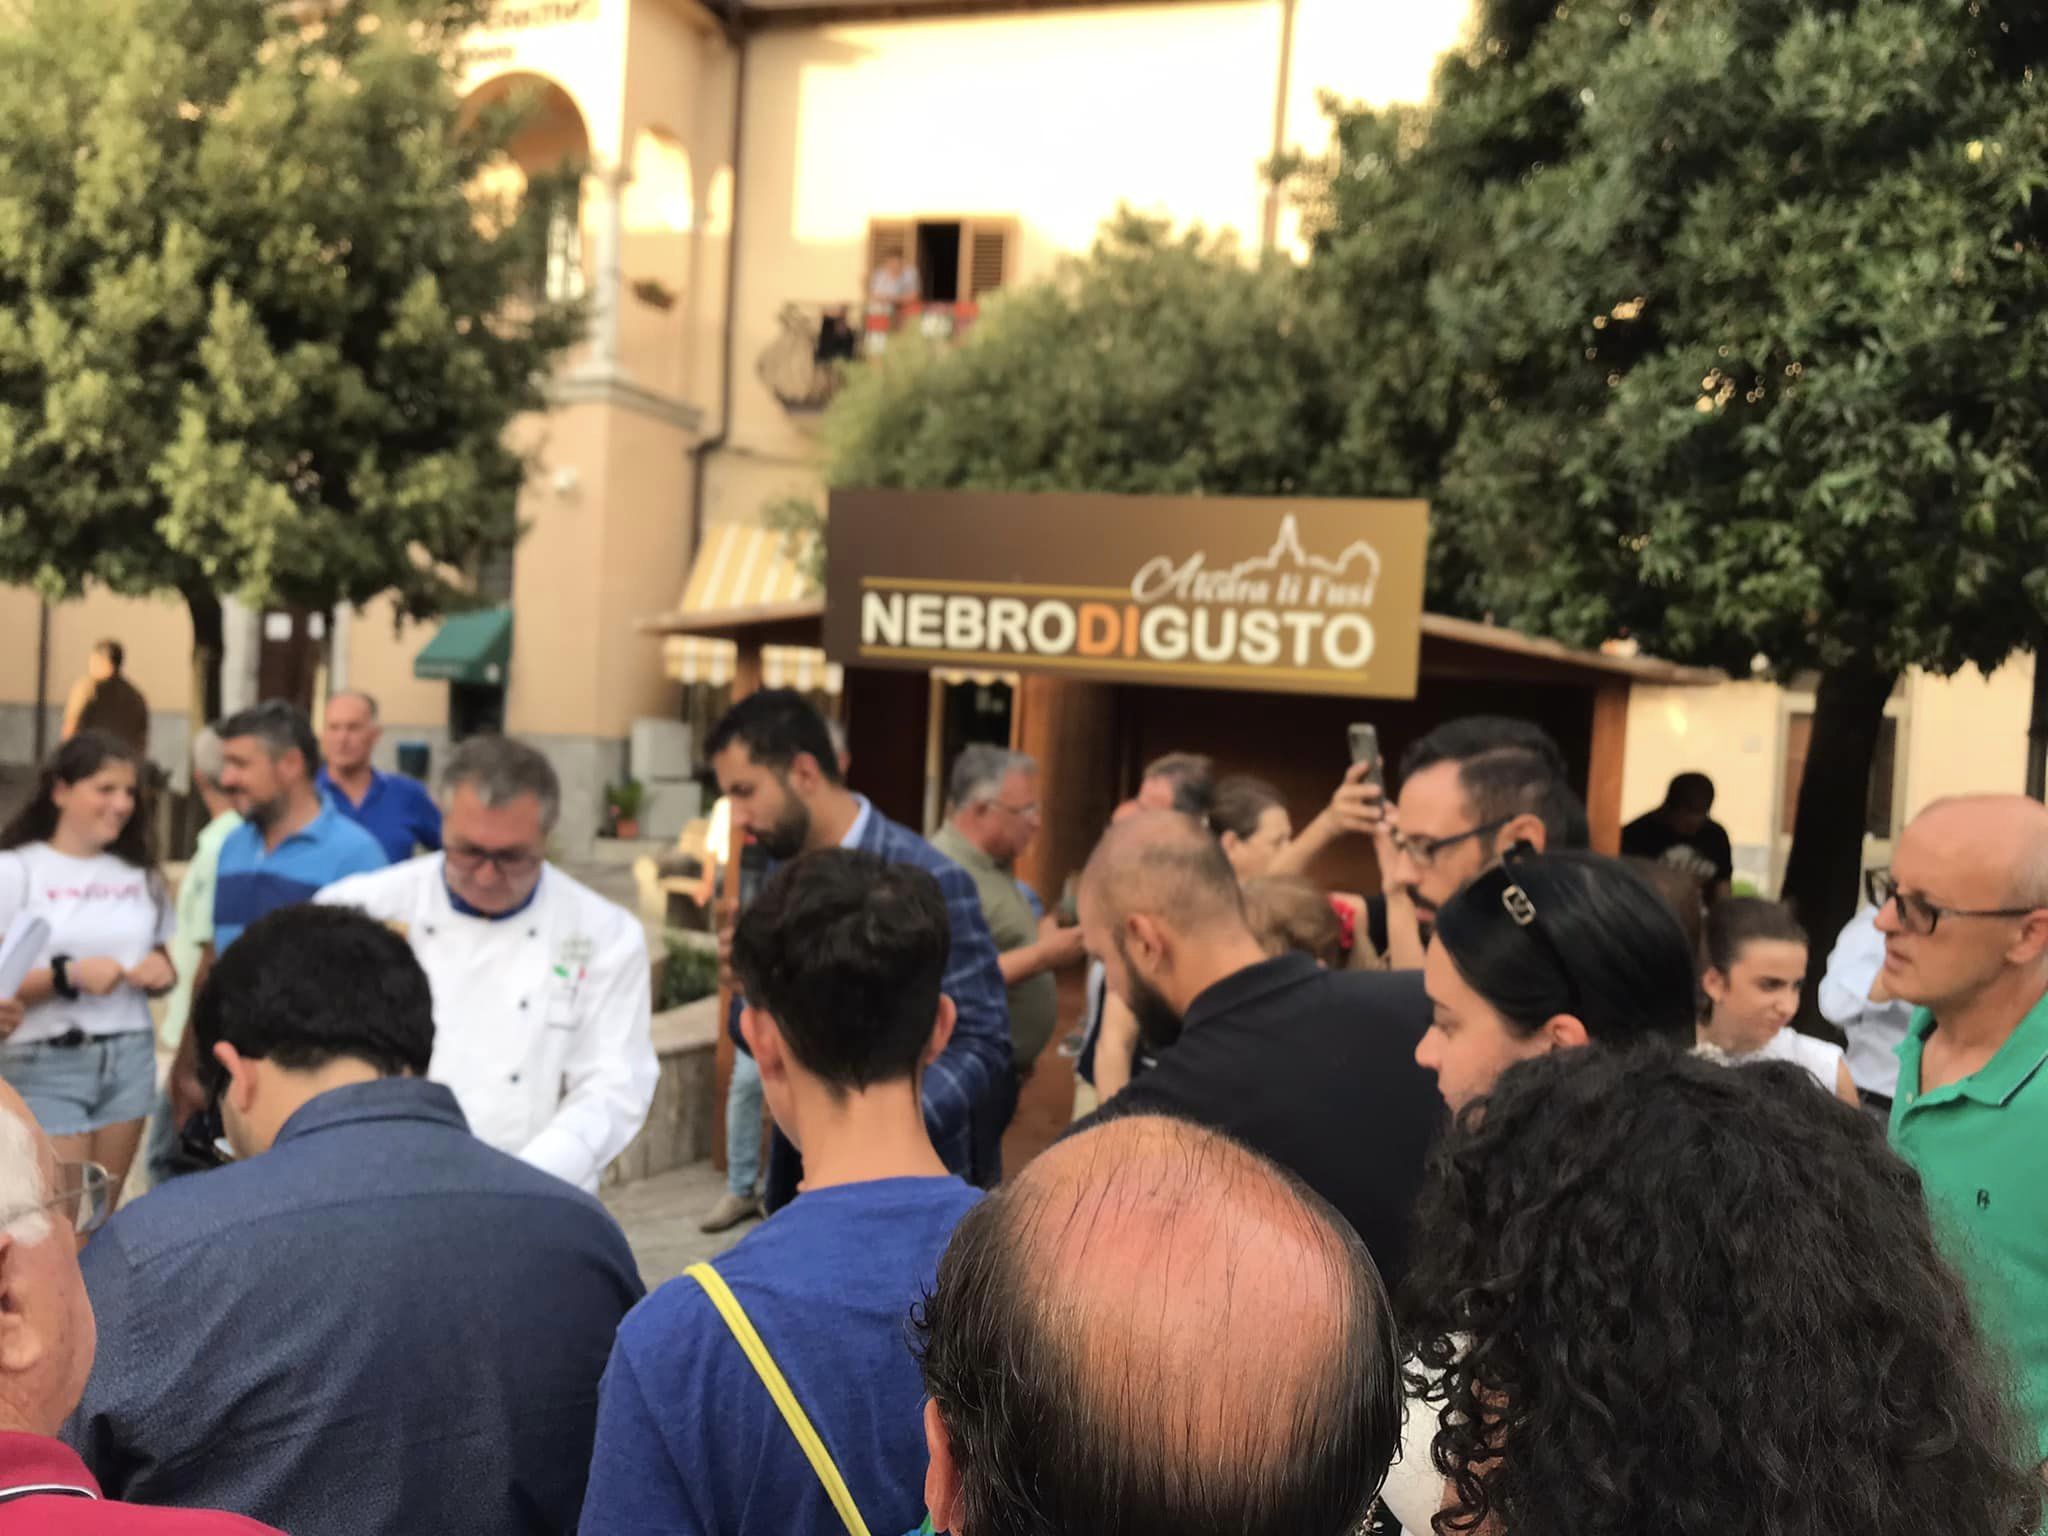 NEBROdiGUSTO: due weekend con i migliori chef in uno dei borghi più belli della Sicilia